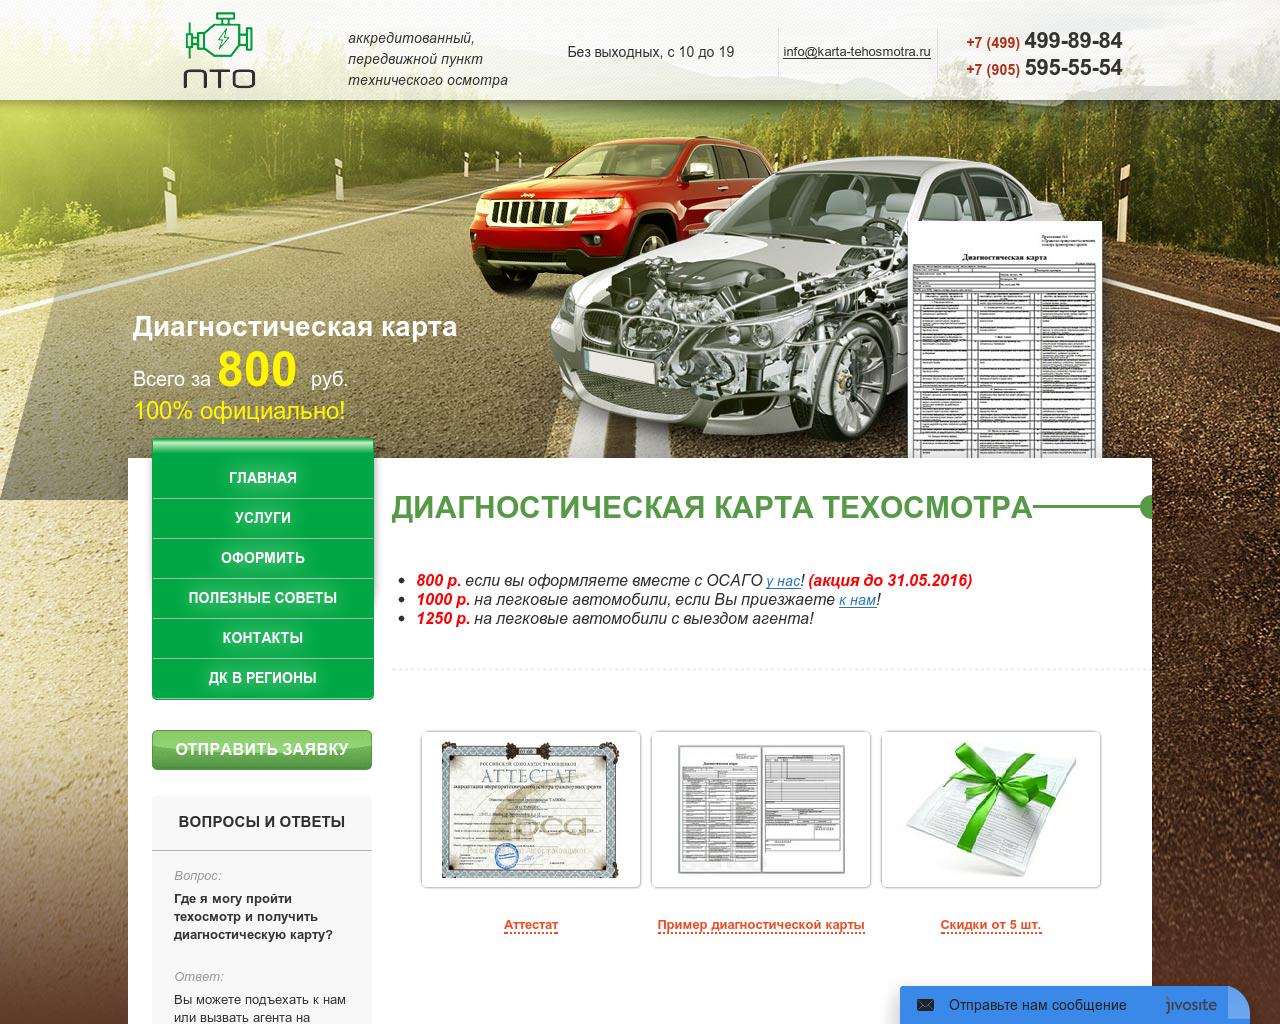 Изображение сайта karta-tehosmotra.ru в разрешении 1280x1024